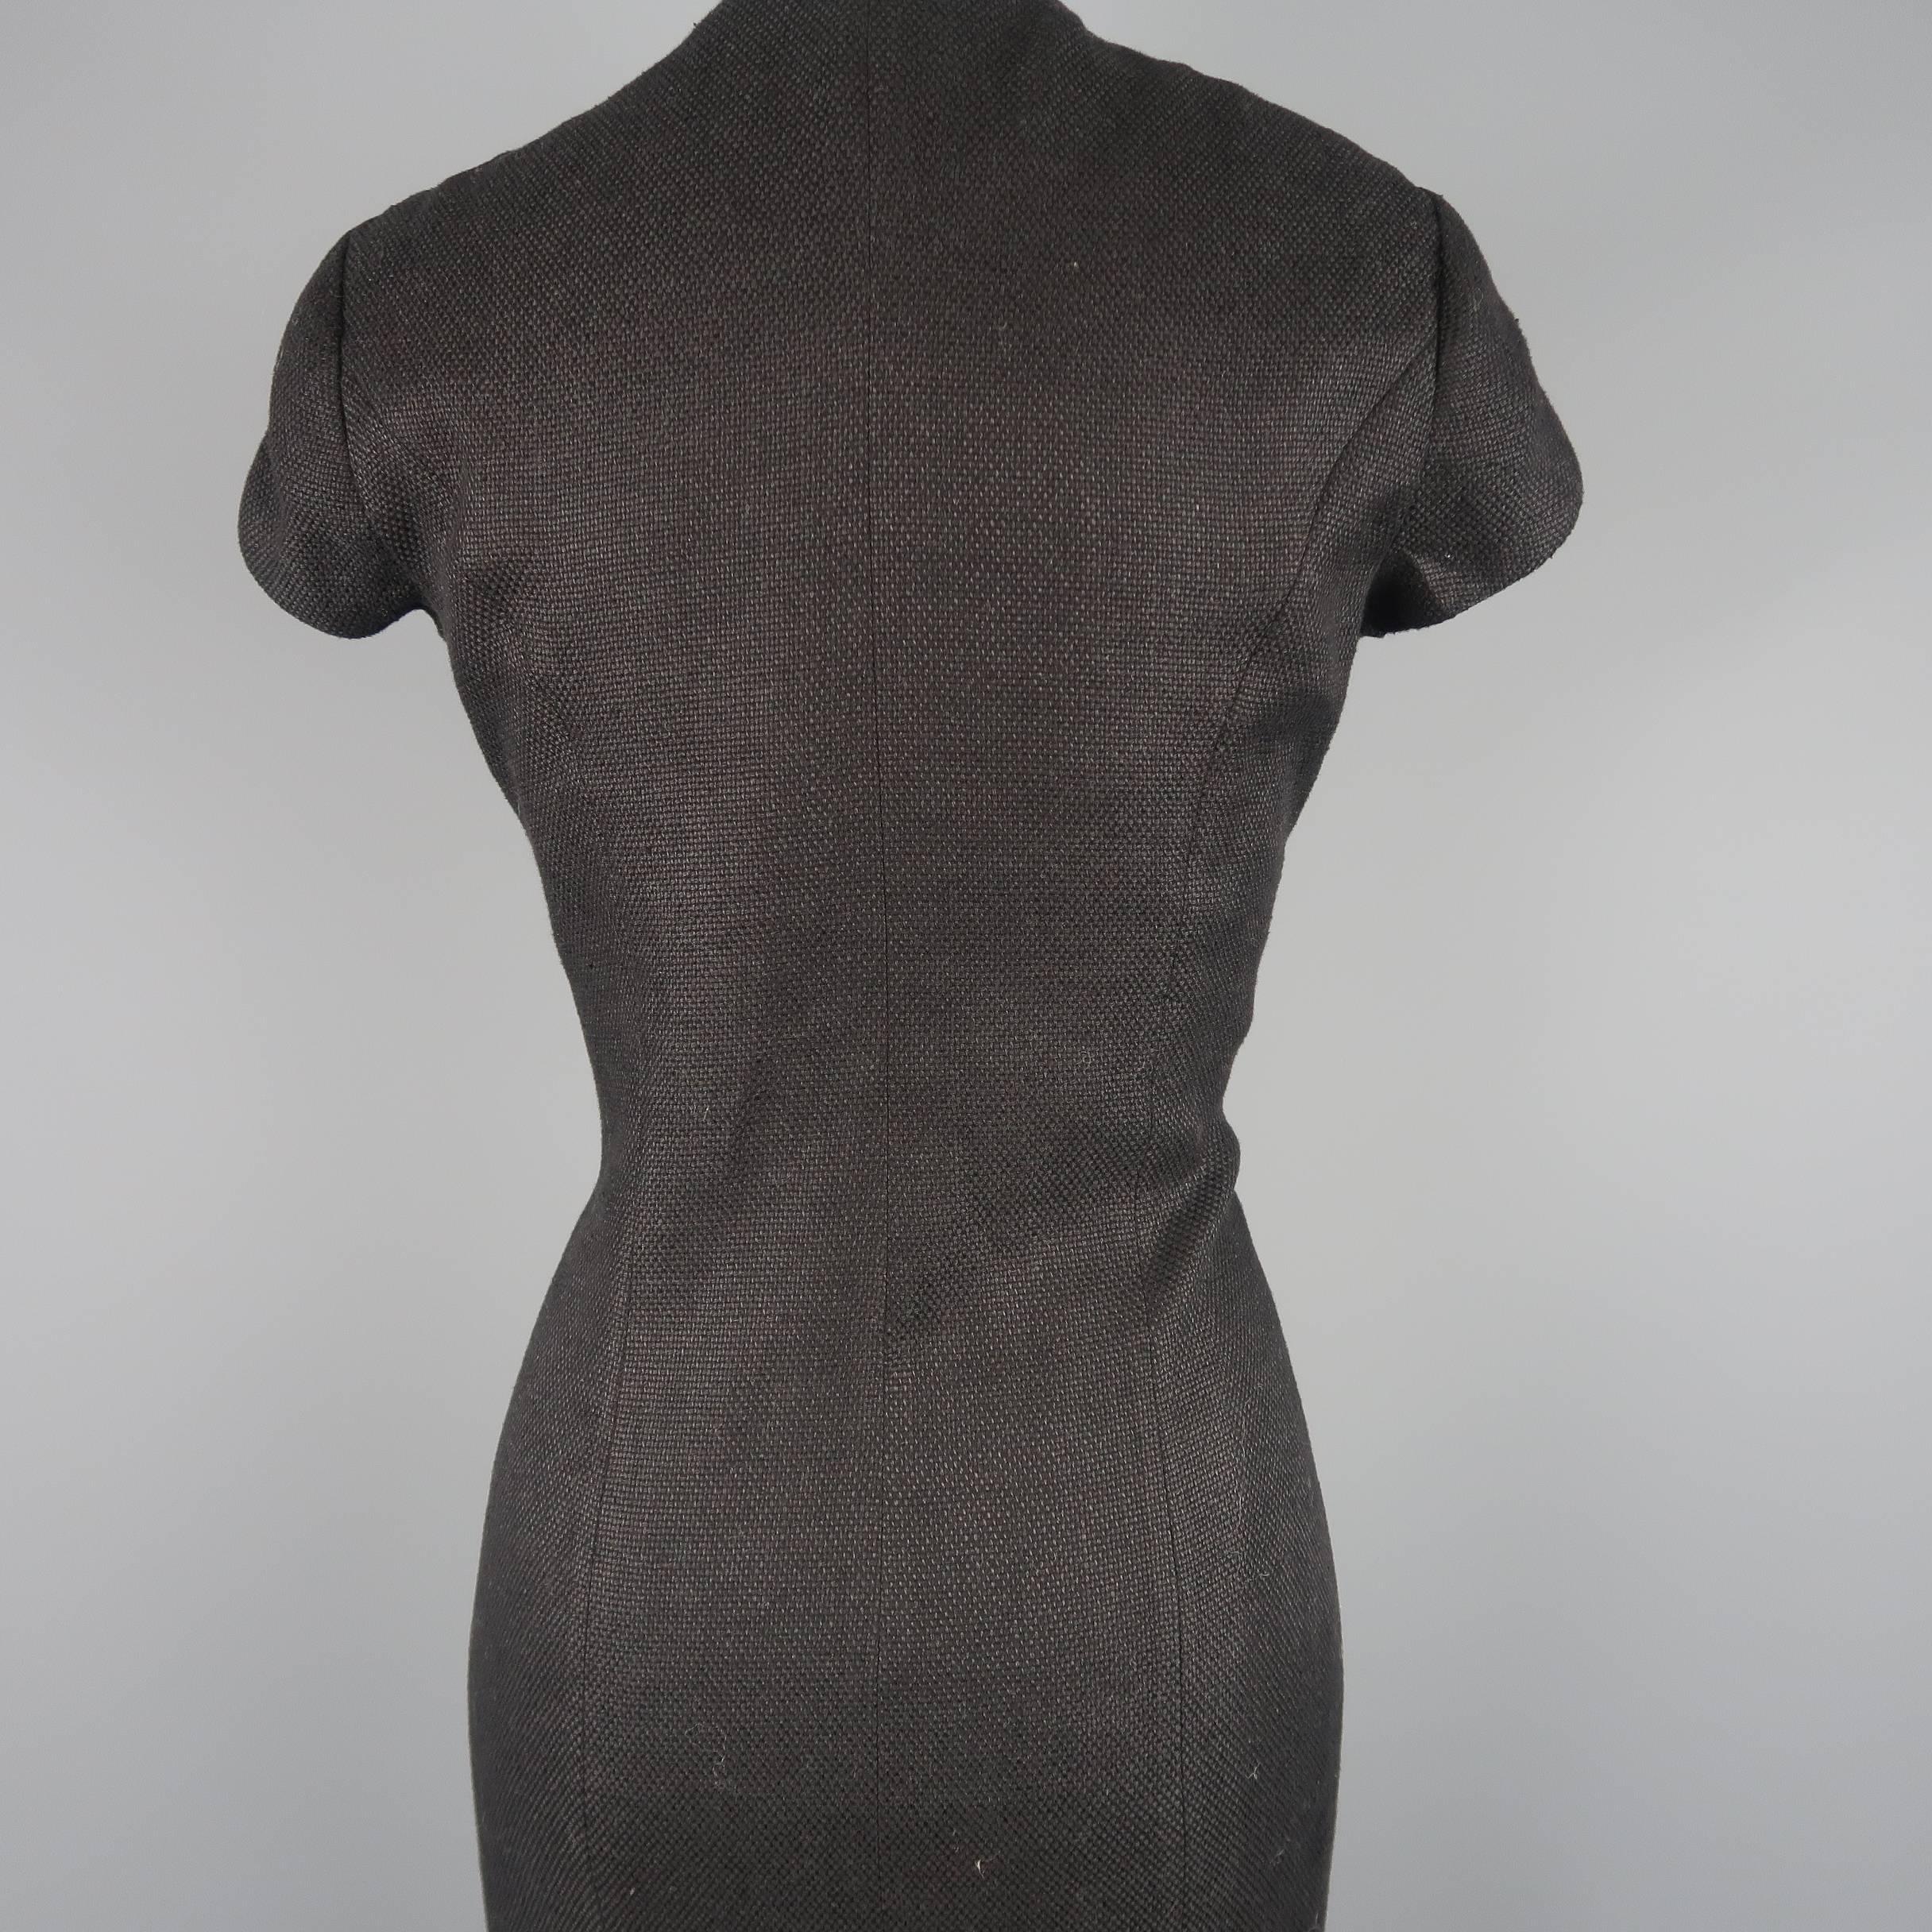 RALPH LAUREN Size 8 Black Woven Linen Scoop Neck Dress 2